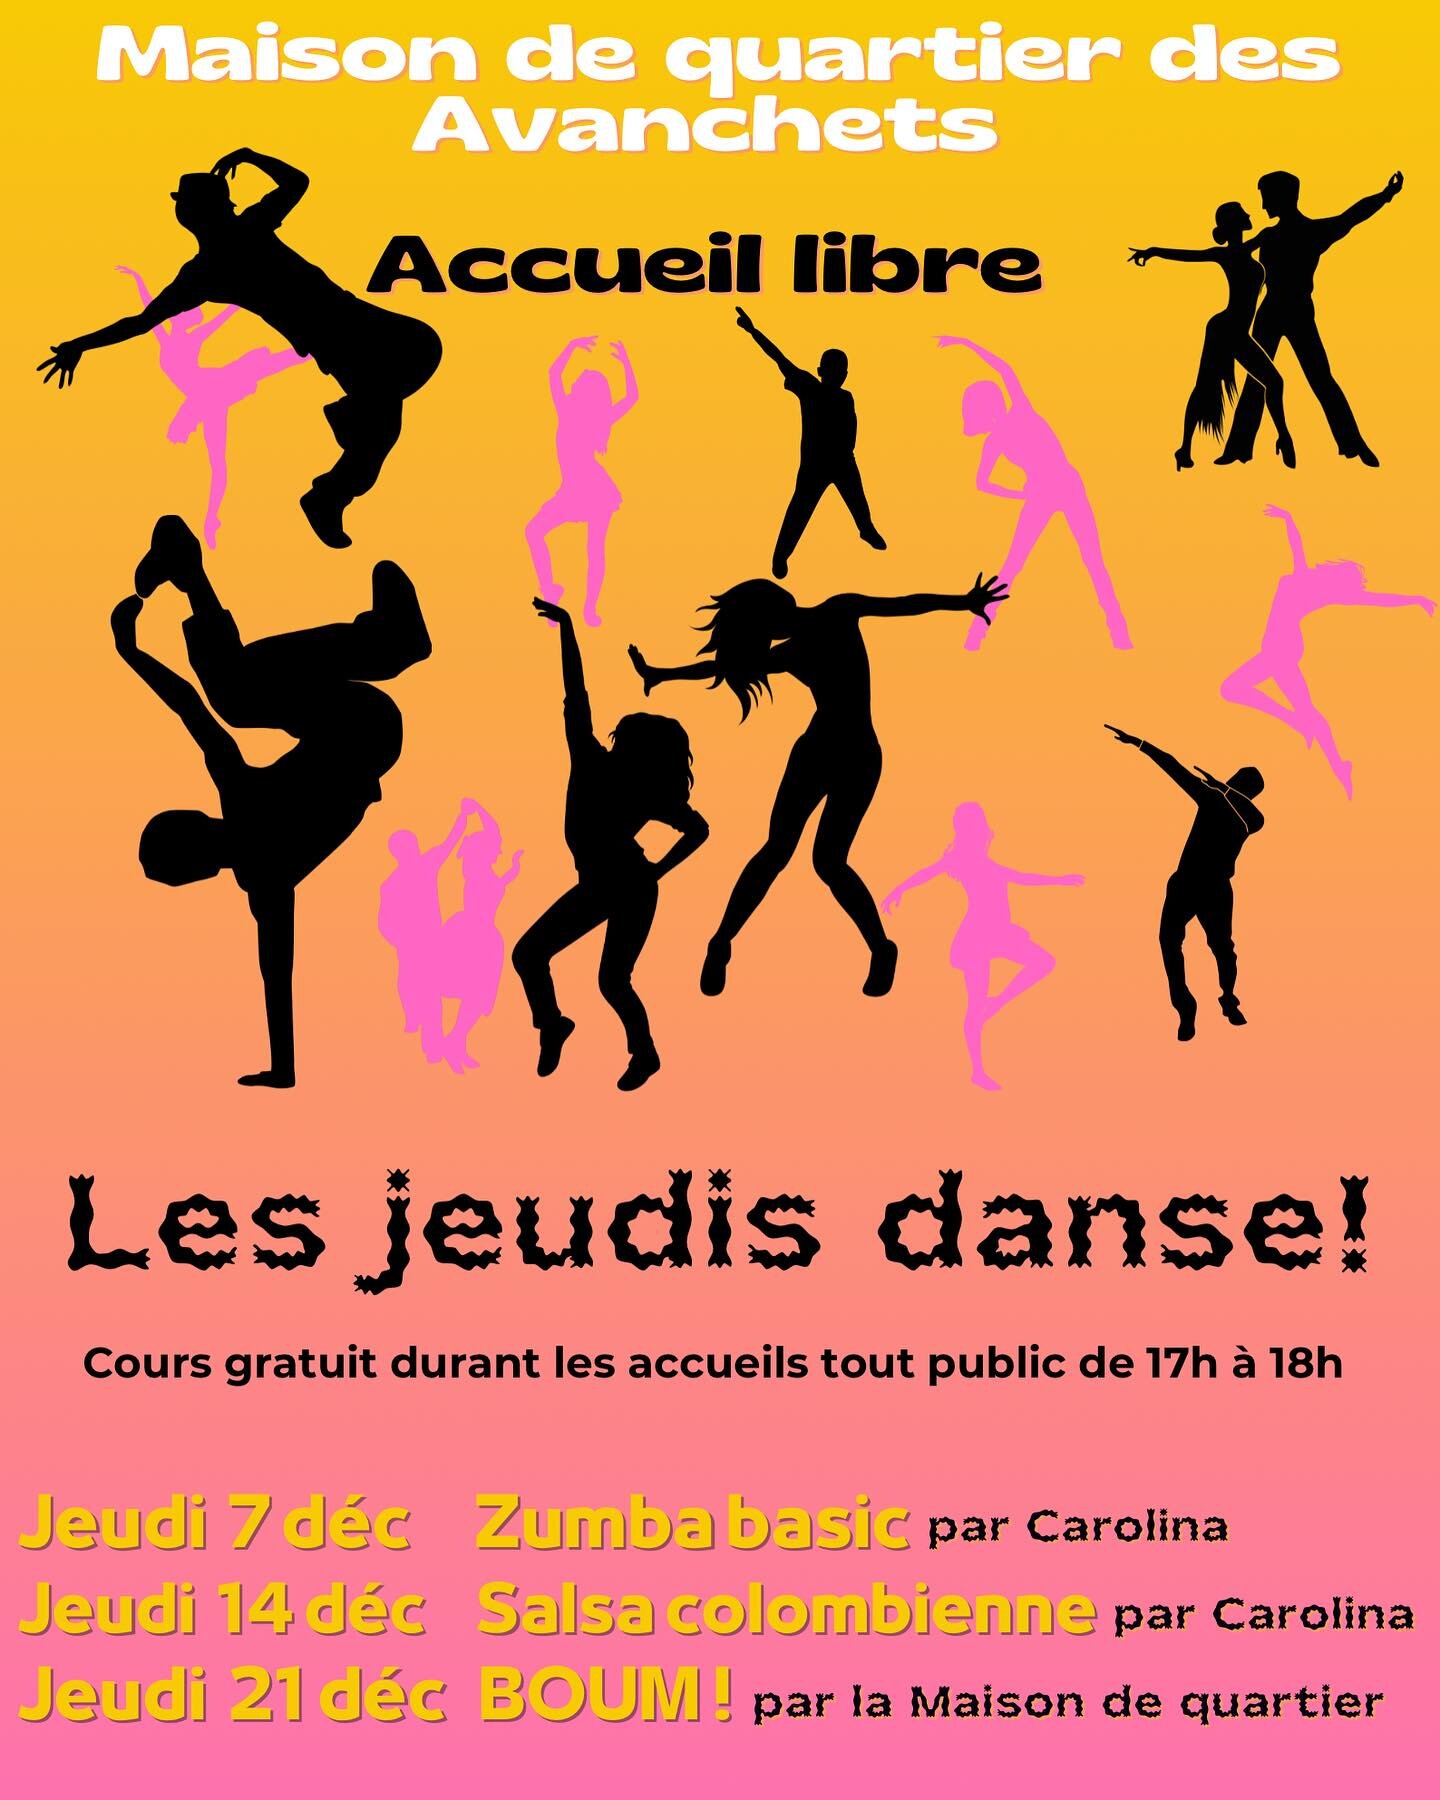 Venez danser &agrave; la Maison de quartier lors des JEUDIS DANSE! 

💃🕺

Cours gratuit lors des accueils libres tout public de 17h &agrave; 18h